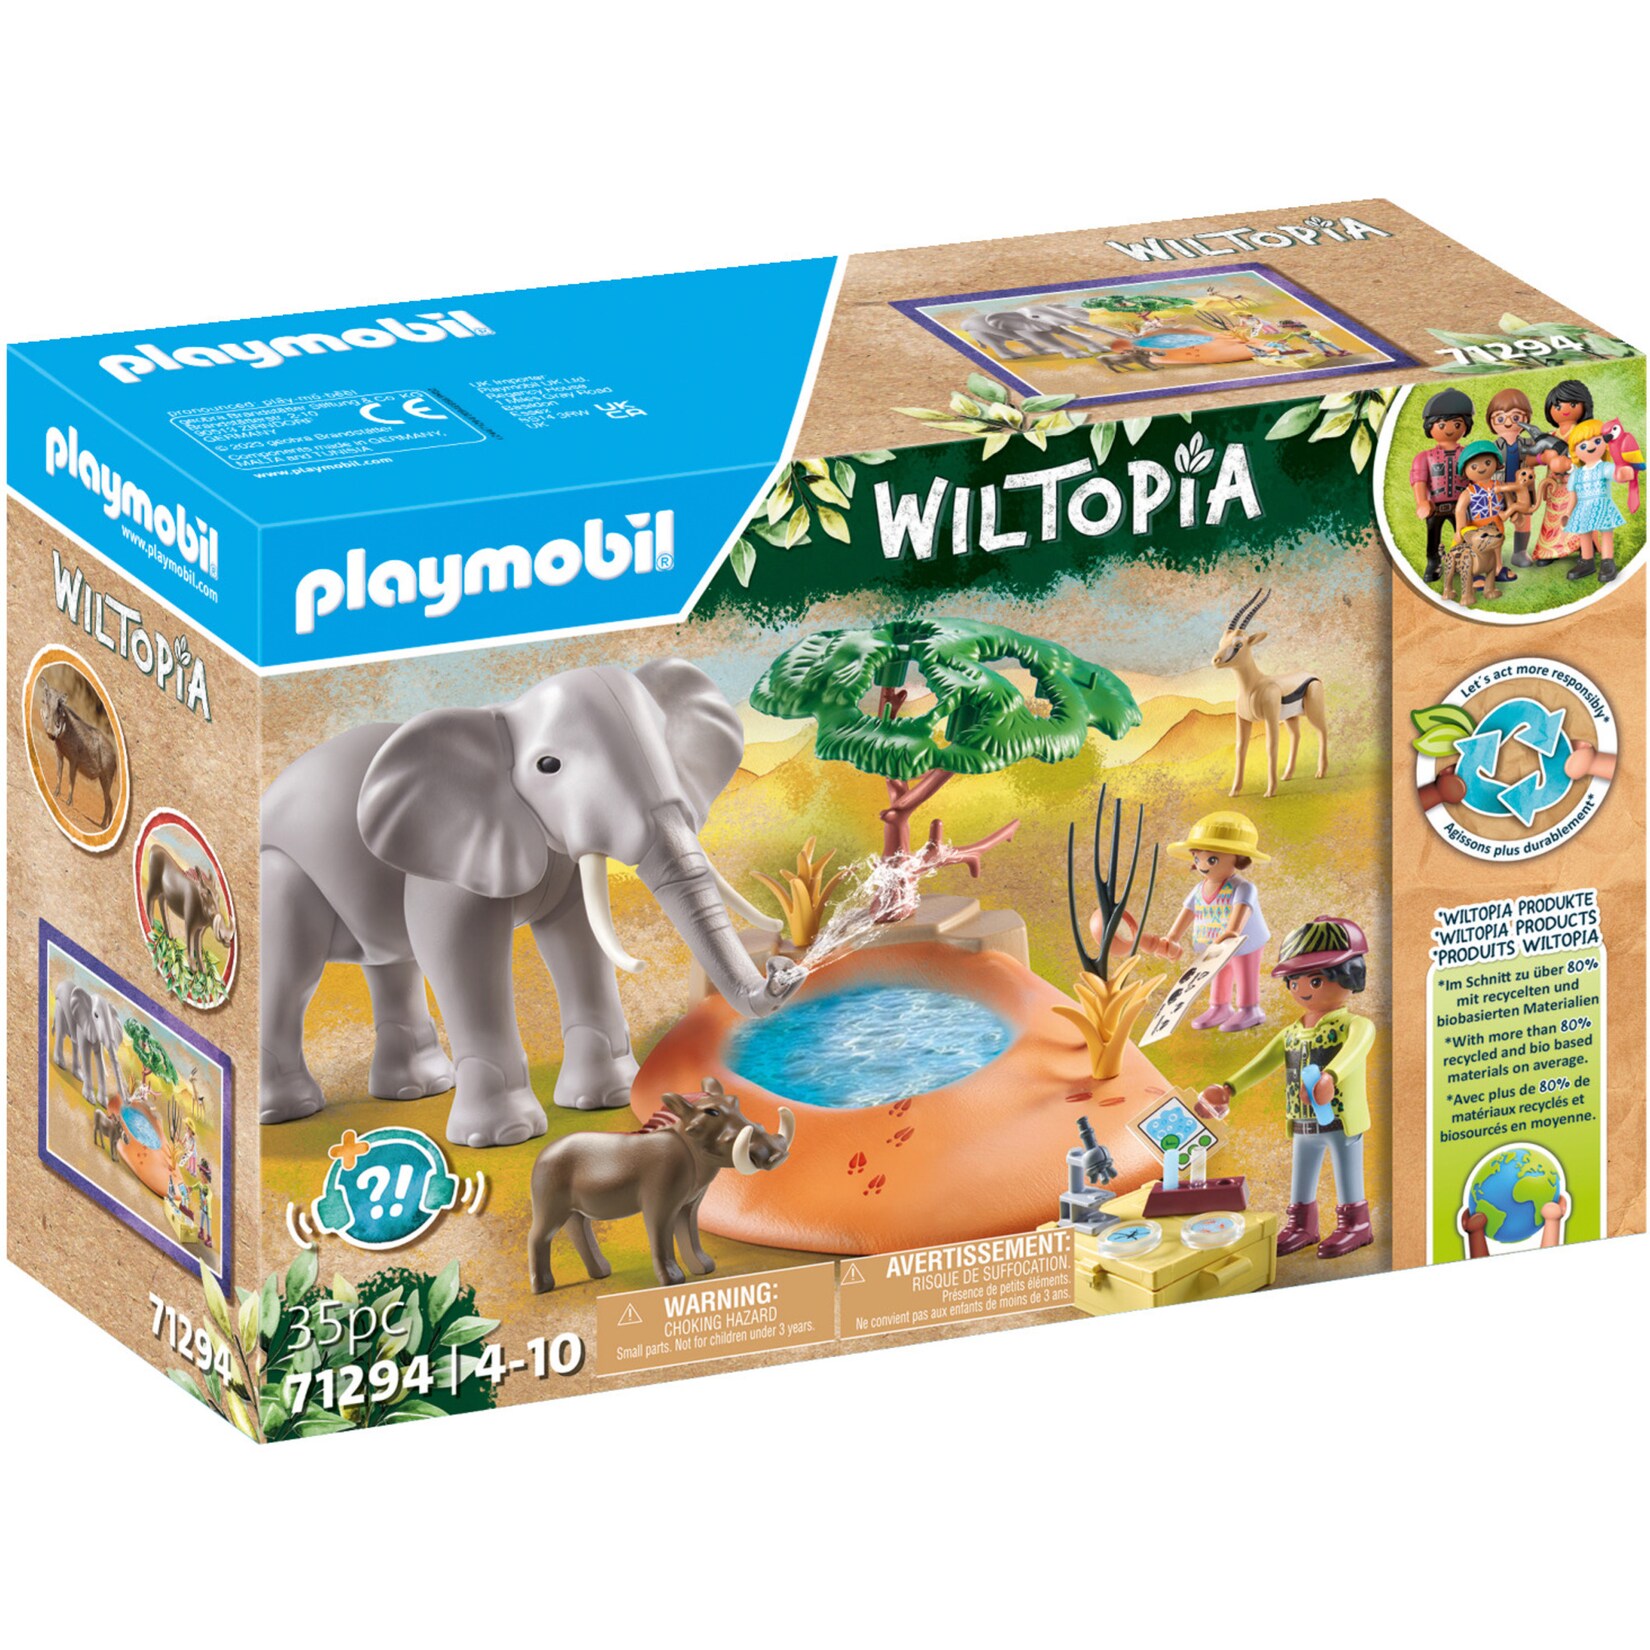 PLAYMOBIL Konstruktionsspielzeug Wiltopia Spritztour zum Wasserloch